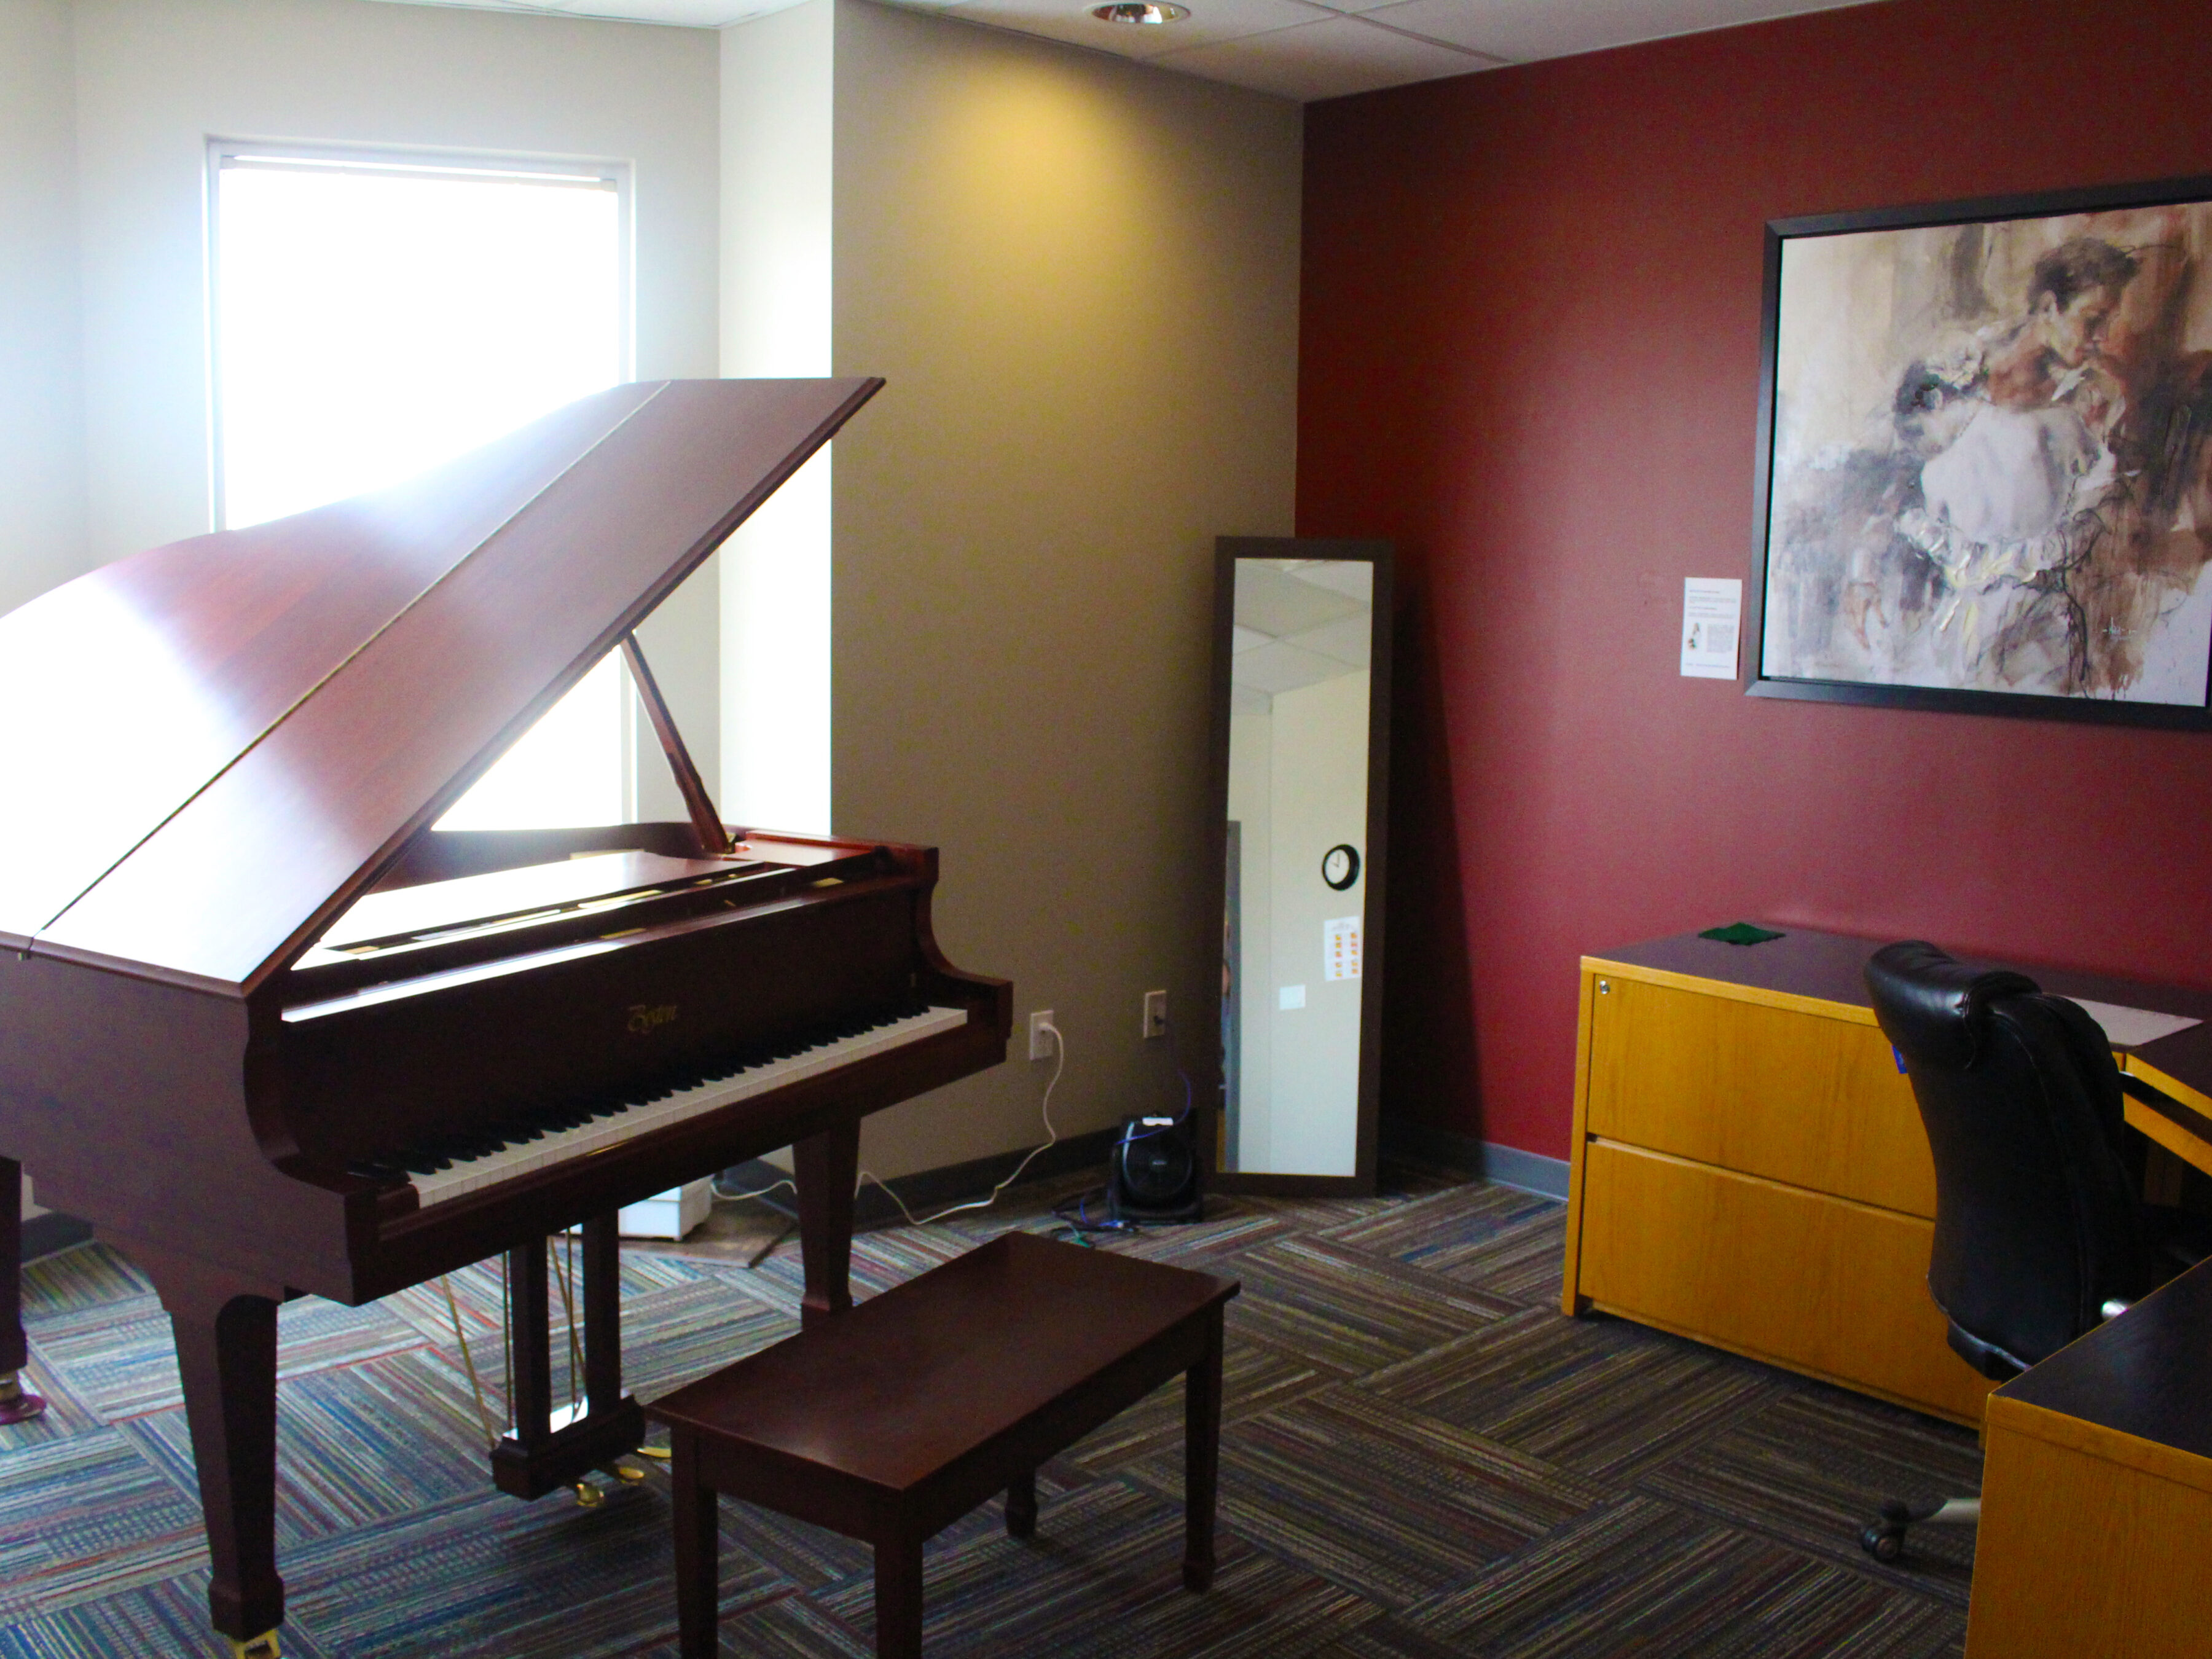 Studio 3 - Piano & Voice with our Boston Grand